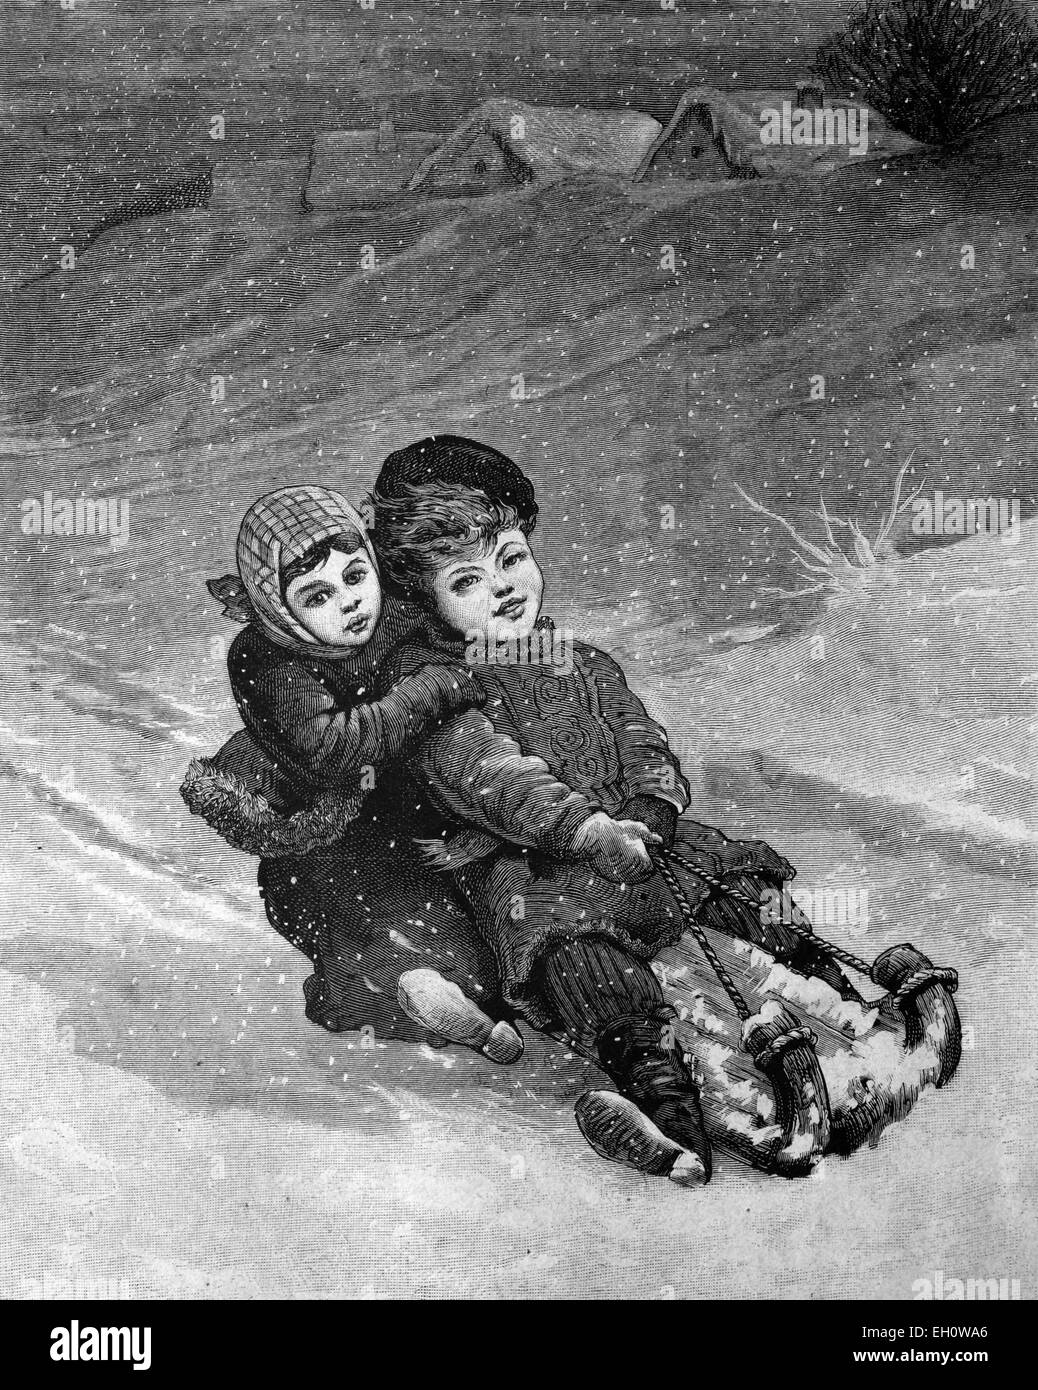 Enfants sur une luge, illustration historique, vers 1886 Banque D'Images